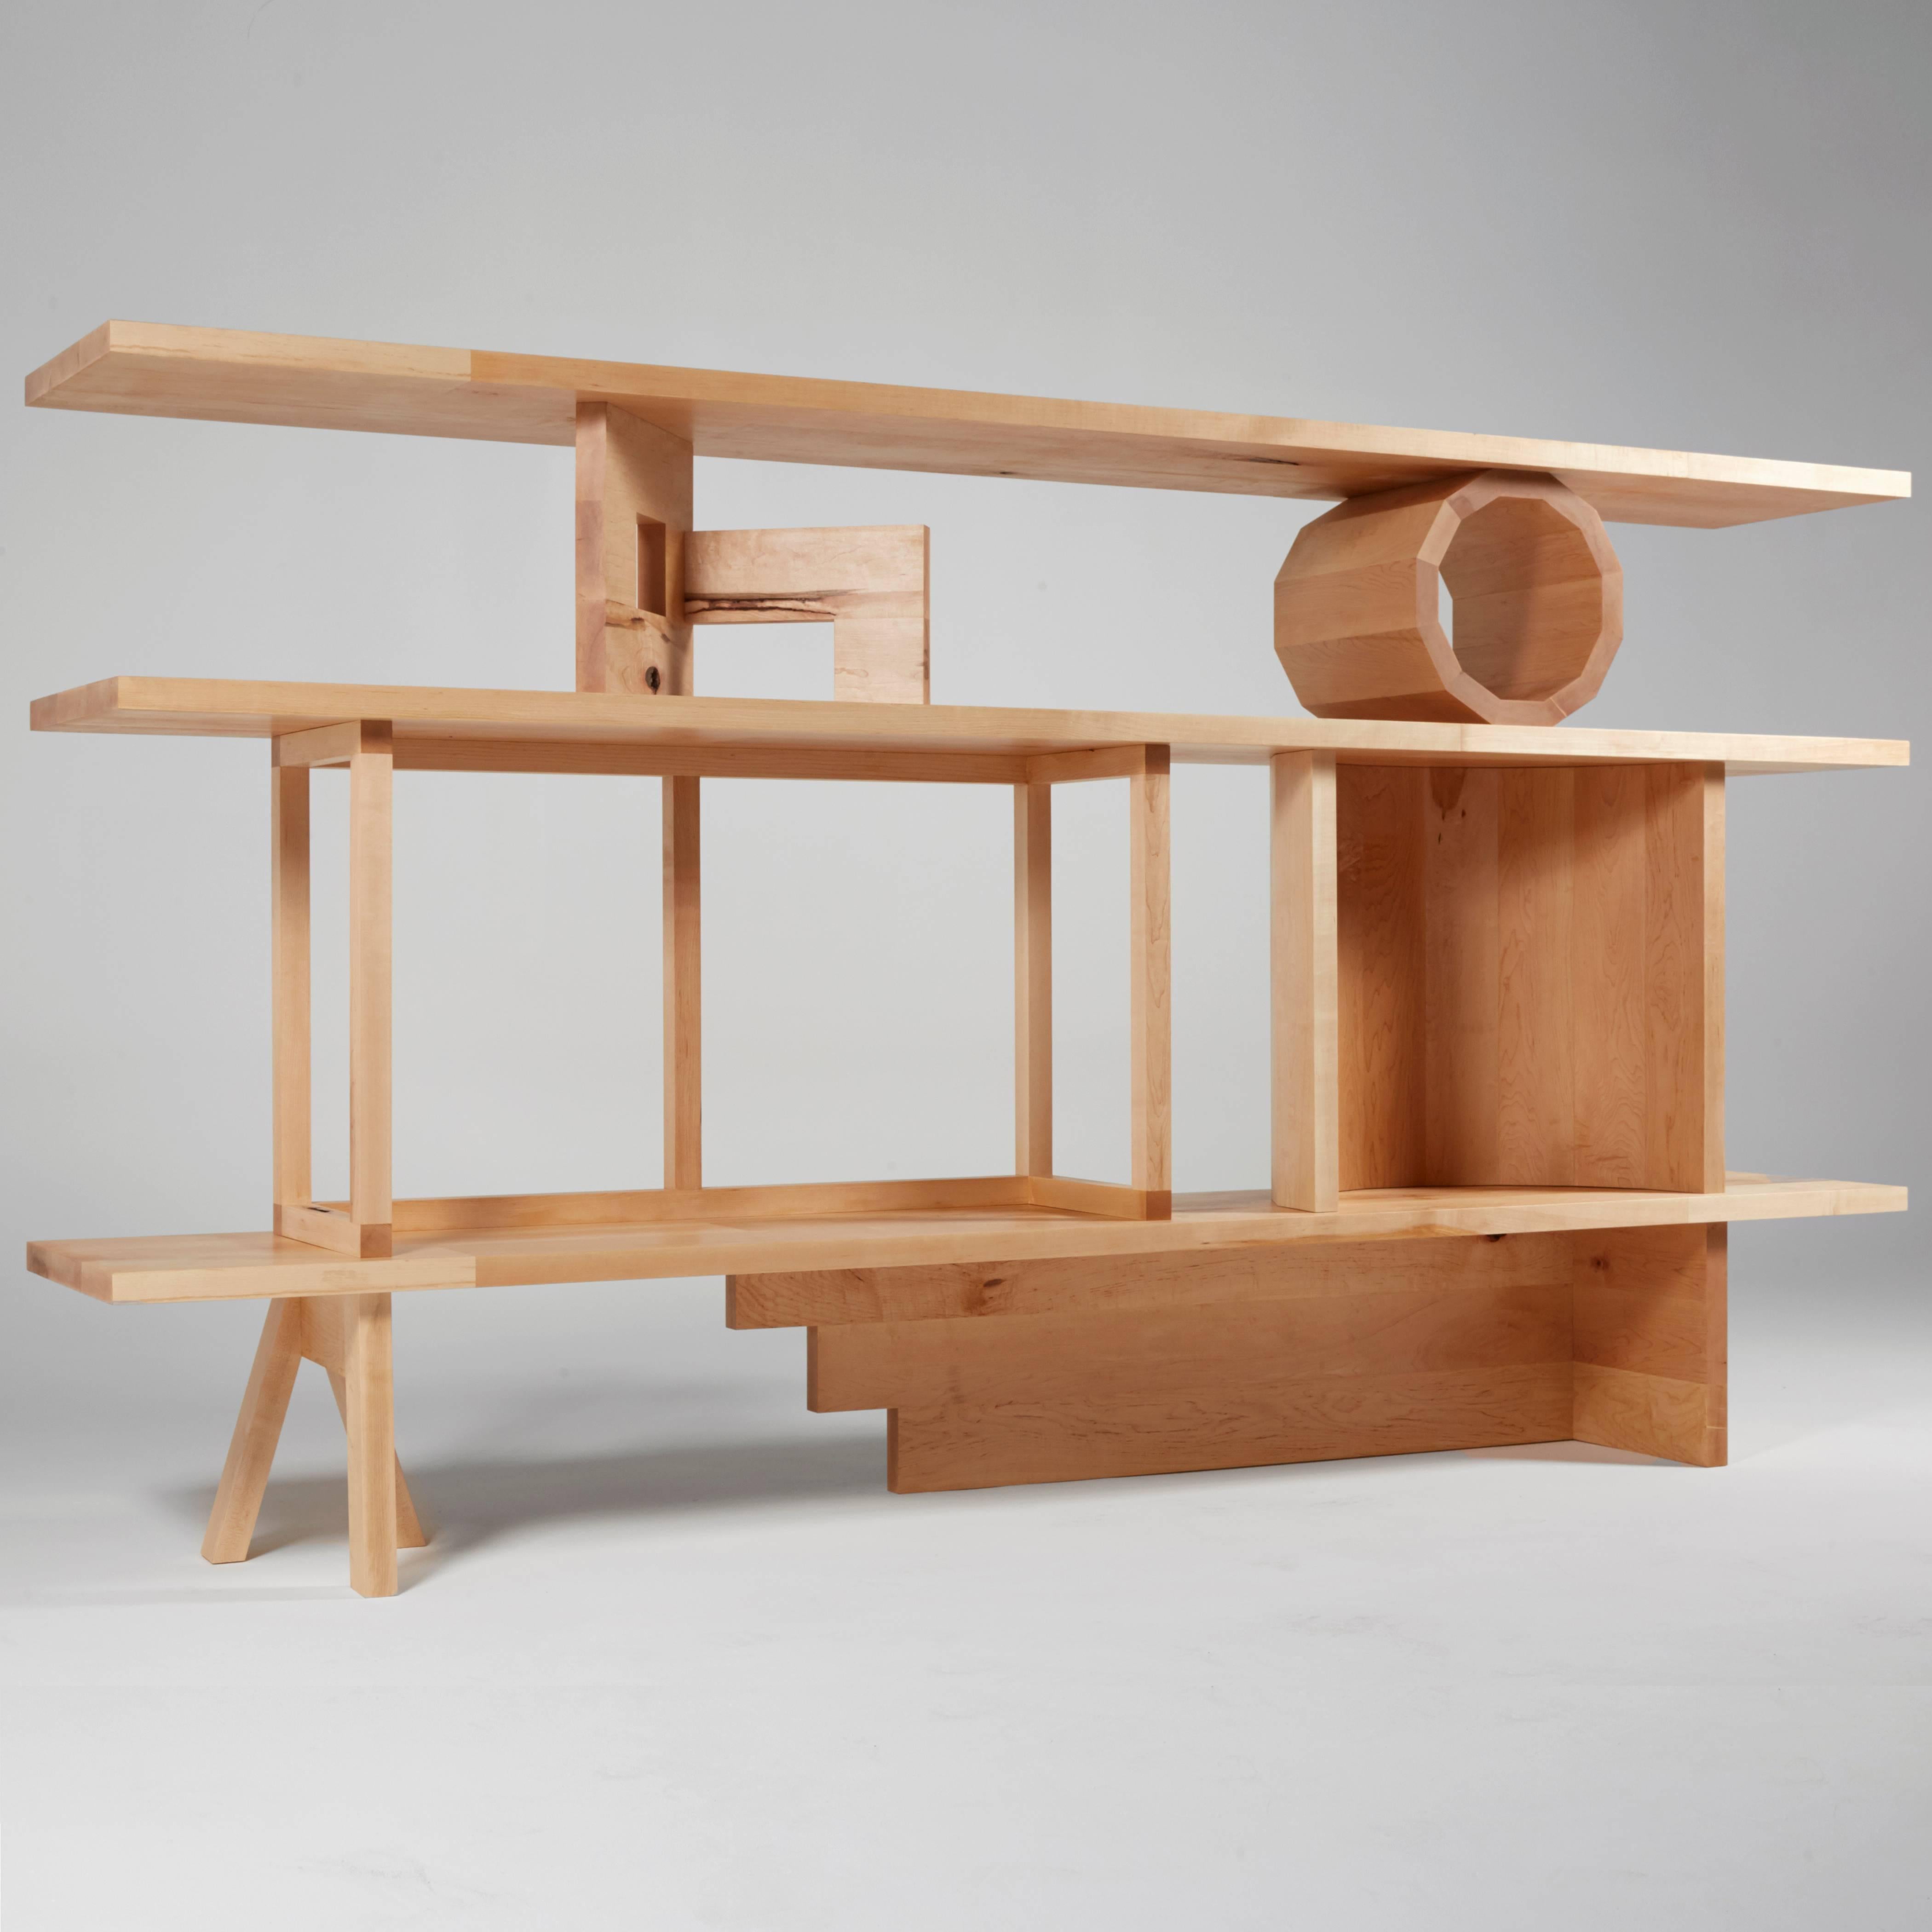 Stack Shelving Unit ist eine Gruppierung architektonischer und abstrakter Skulpturen von Noah Spencer, die zusammen eine Regaleinheit bilden. Wenn diese Skulpturen umherbewegt und in verschiedenen Positionen zum Halten der Regalbretter verwendet